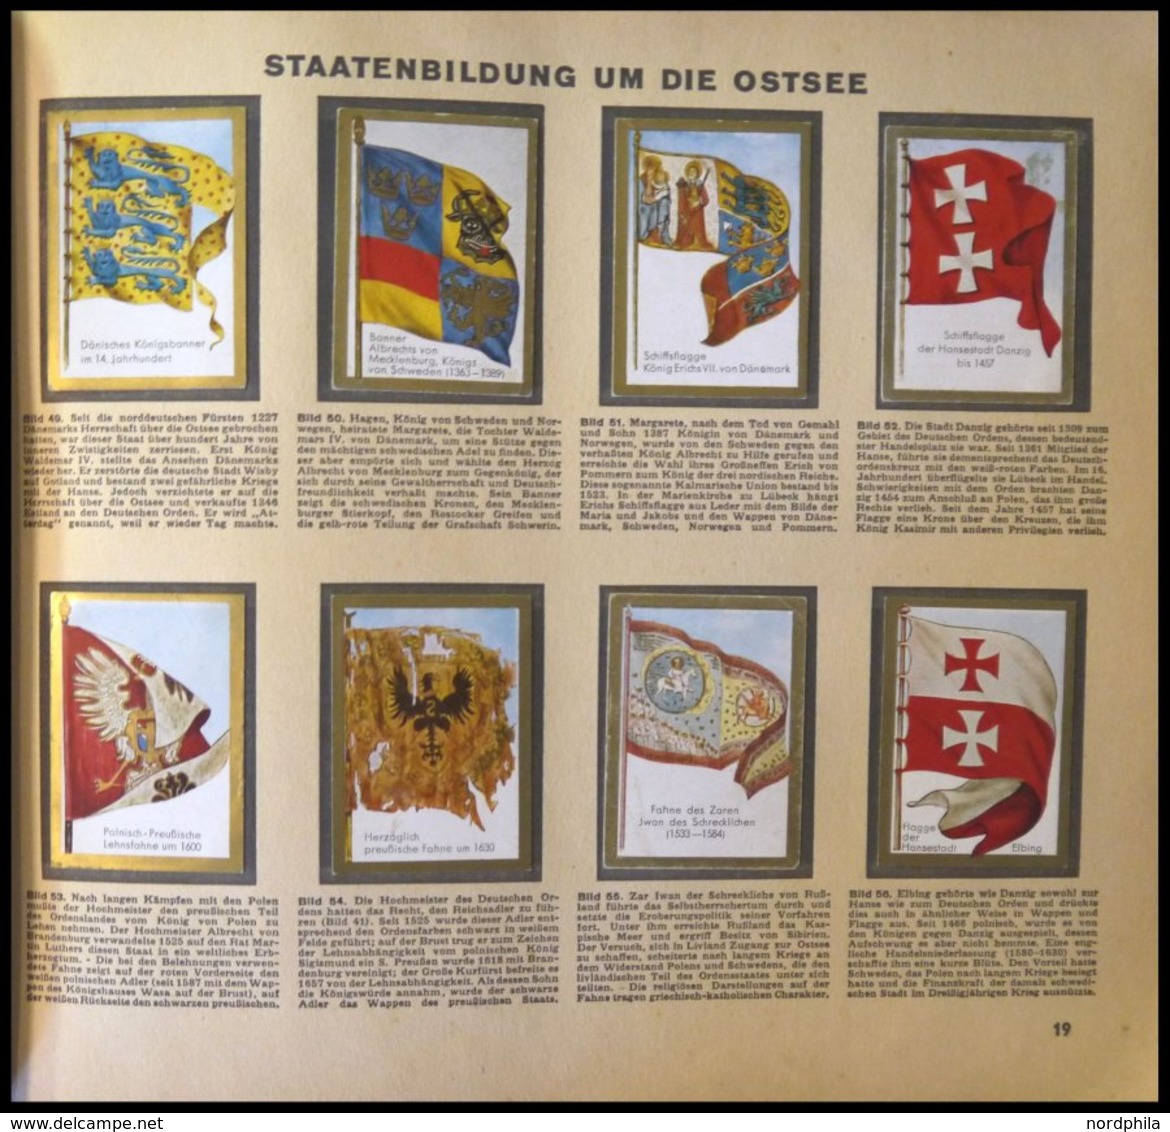 SONSTIGE MOTIVE Sammelbilderalbum Die Welt In Bildern - Historische Fahnen, Album 8, Leichte Gebrauchsspuren - Non Classés